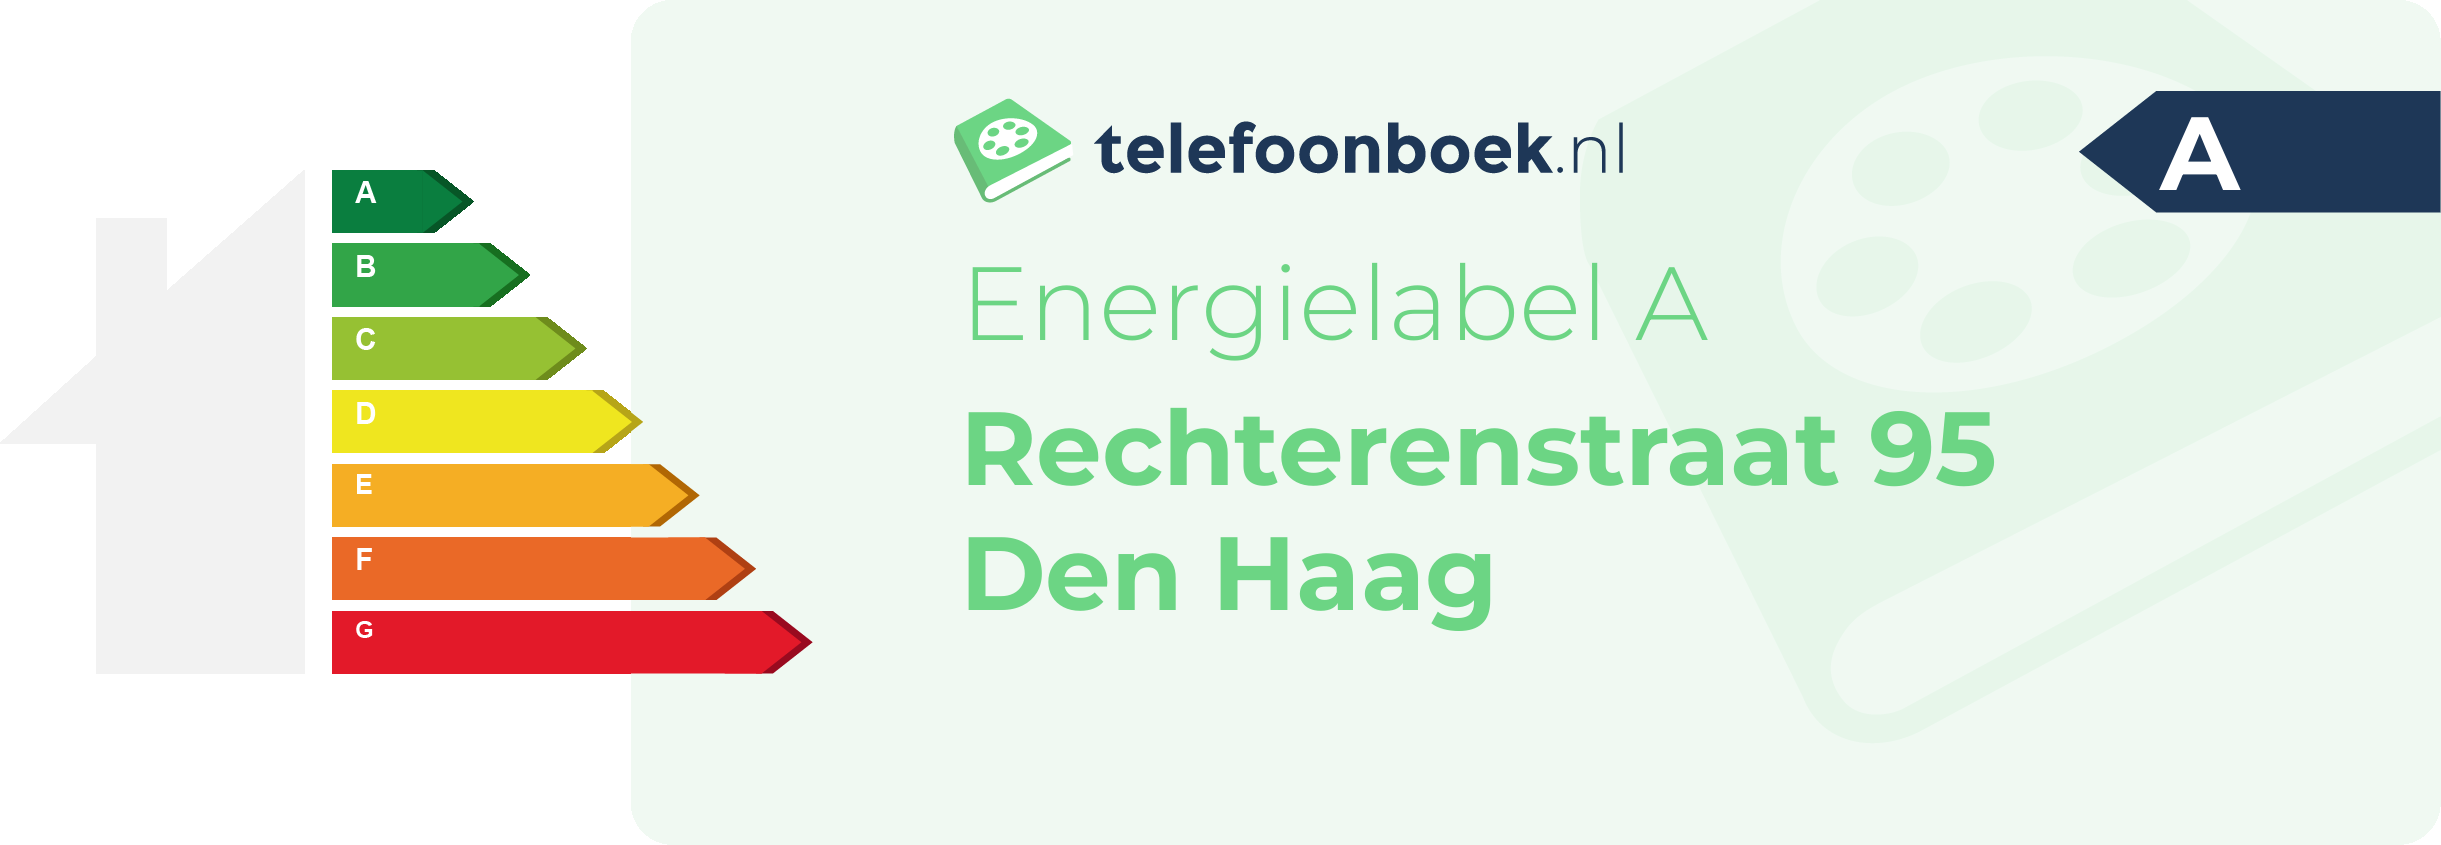 Energielabel Rechterenstraat 95 Den Haag